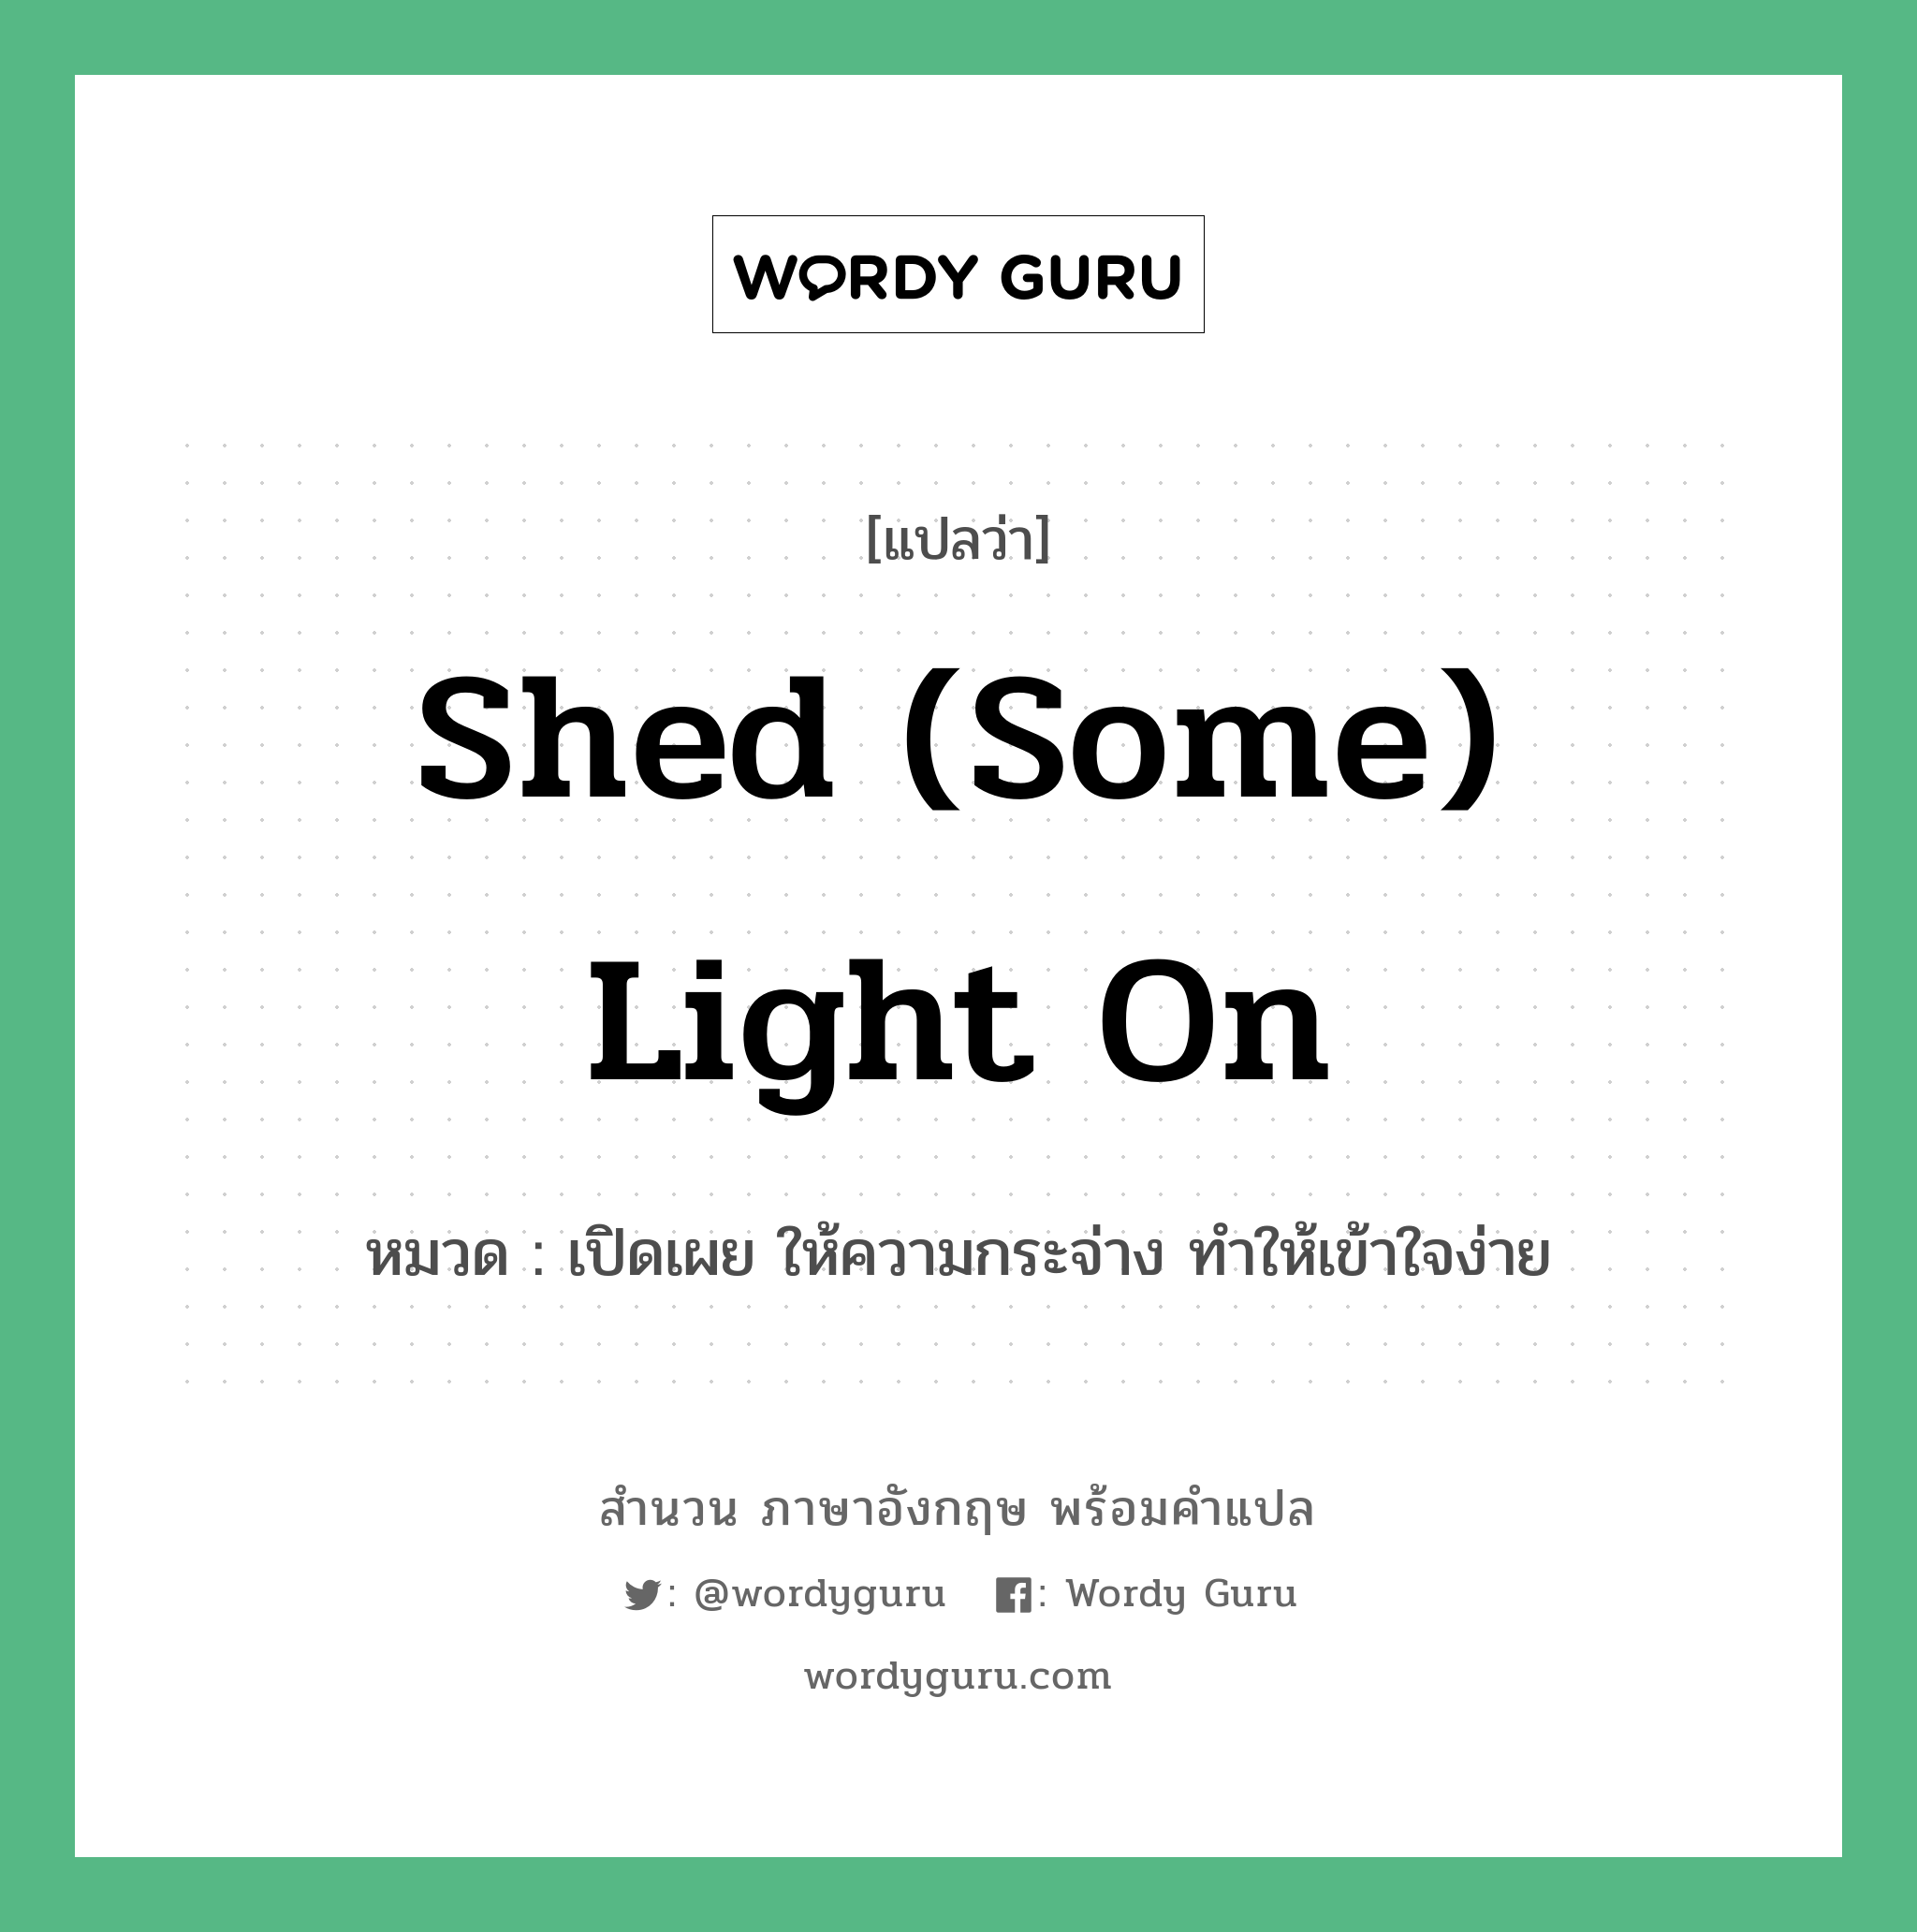 Shed (some) light on แปลว่า?, สำนวนภาษาอังกฤษ Shed (some) light on หมวด เปิดเผย ให้ความกระจ่าง ทำให้เข้าใจง่าย